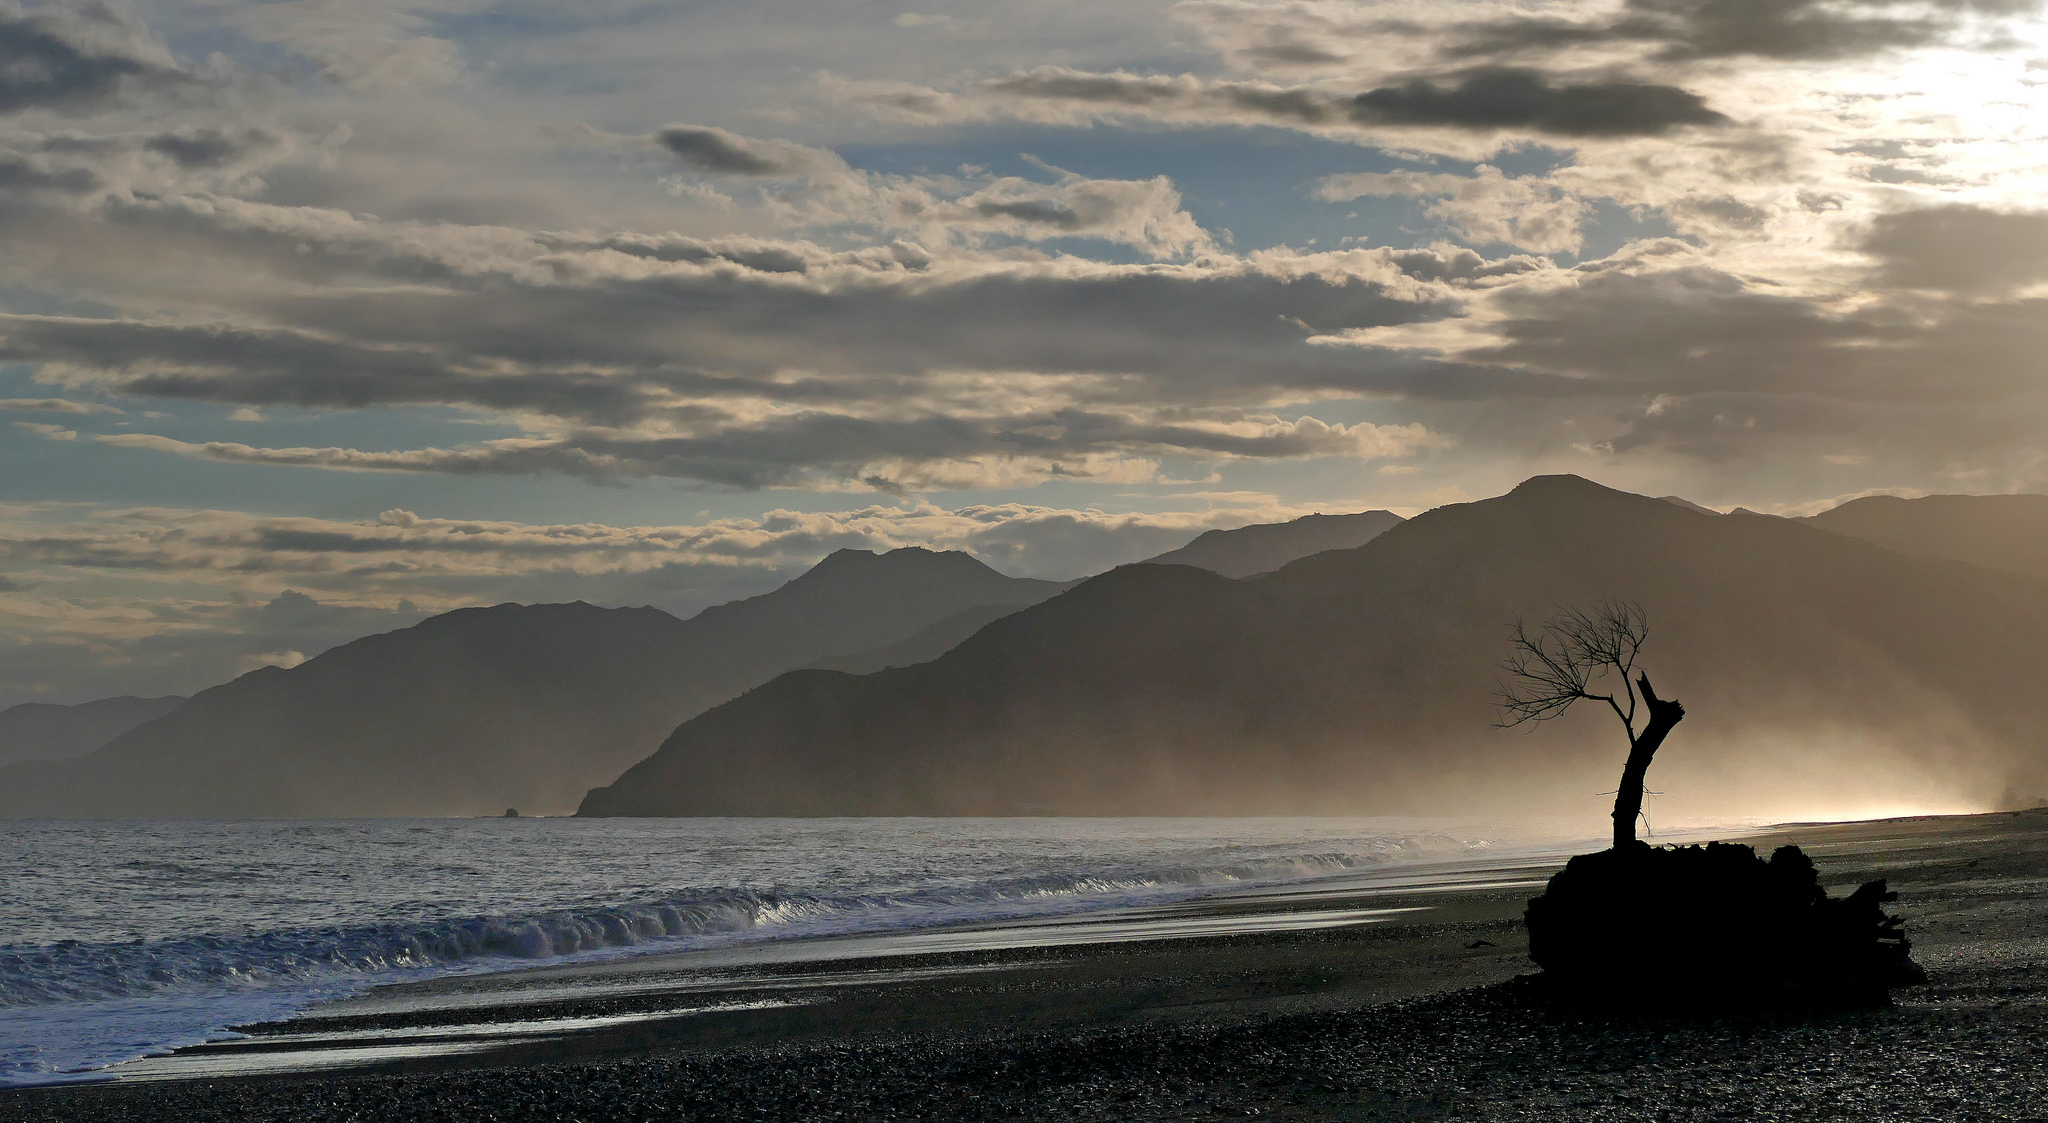 Kaikoura Coastline NZ by Bernard Spragg